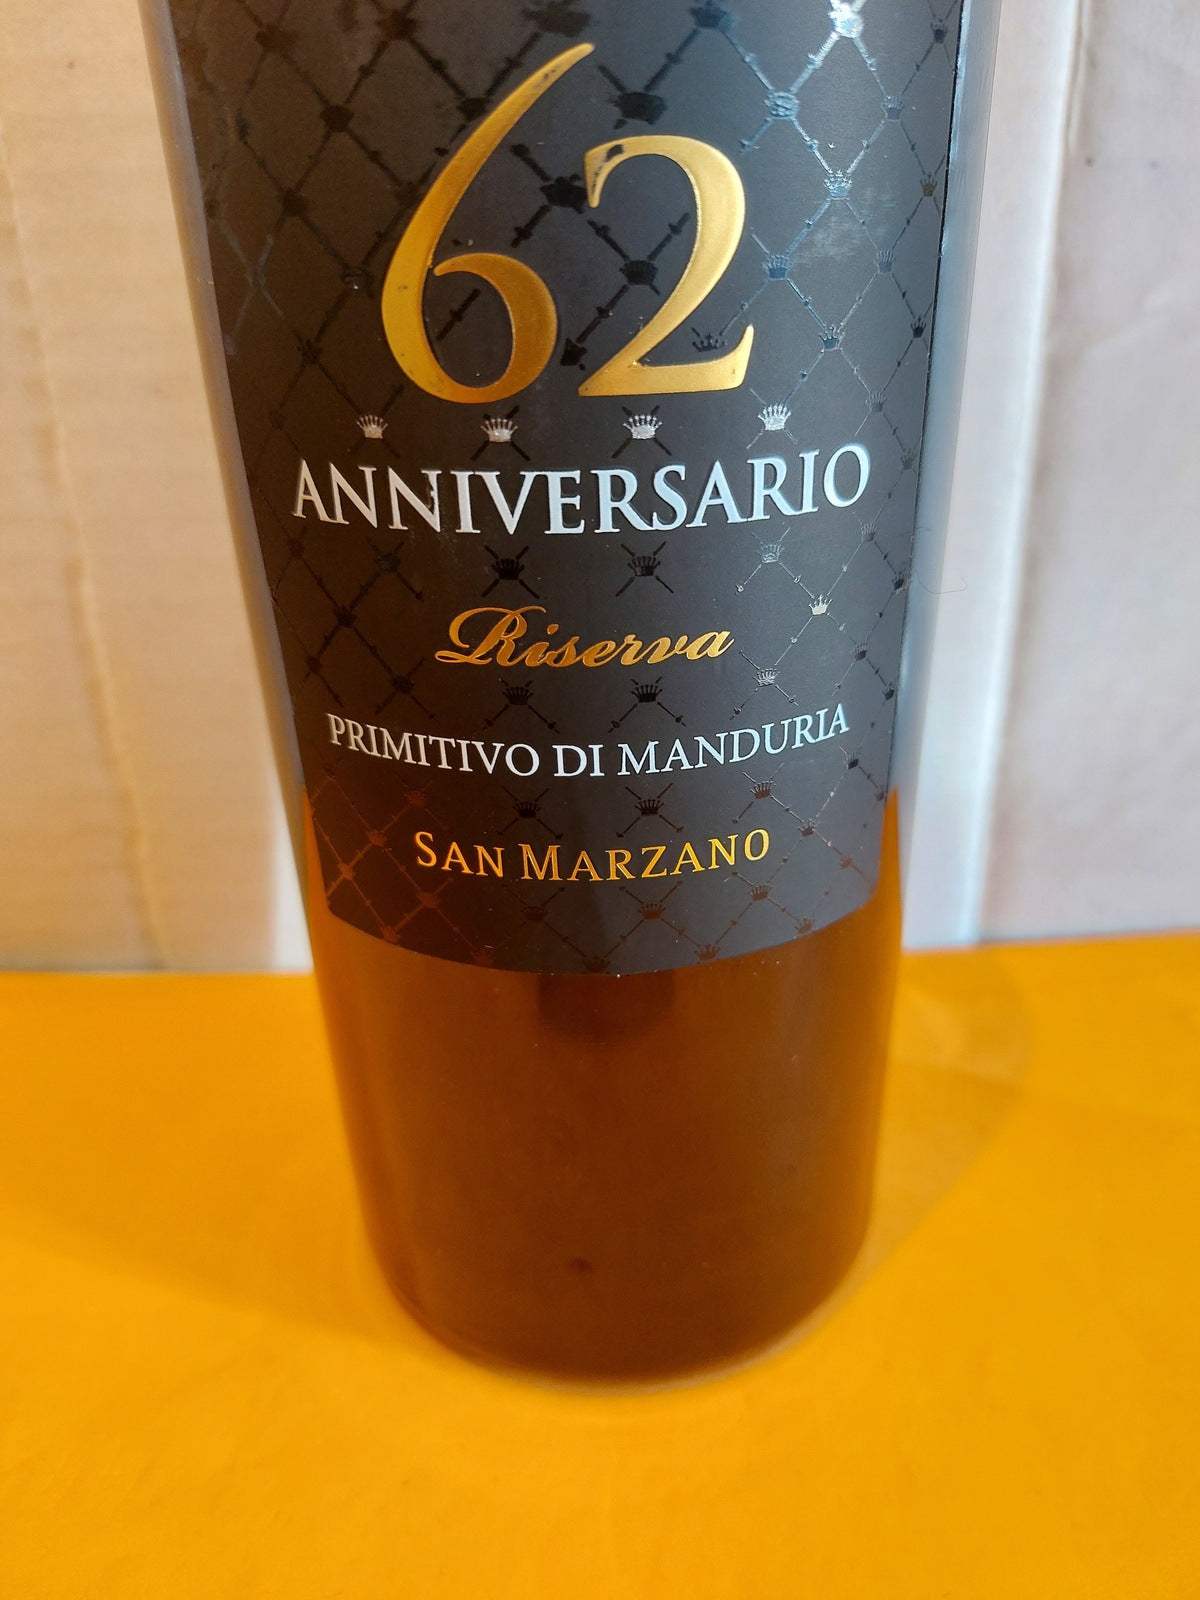 Primitivo di Manduria DOP Riserva "Anniversario 62" 2018 - San Marzano 0,75L.